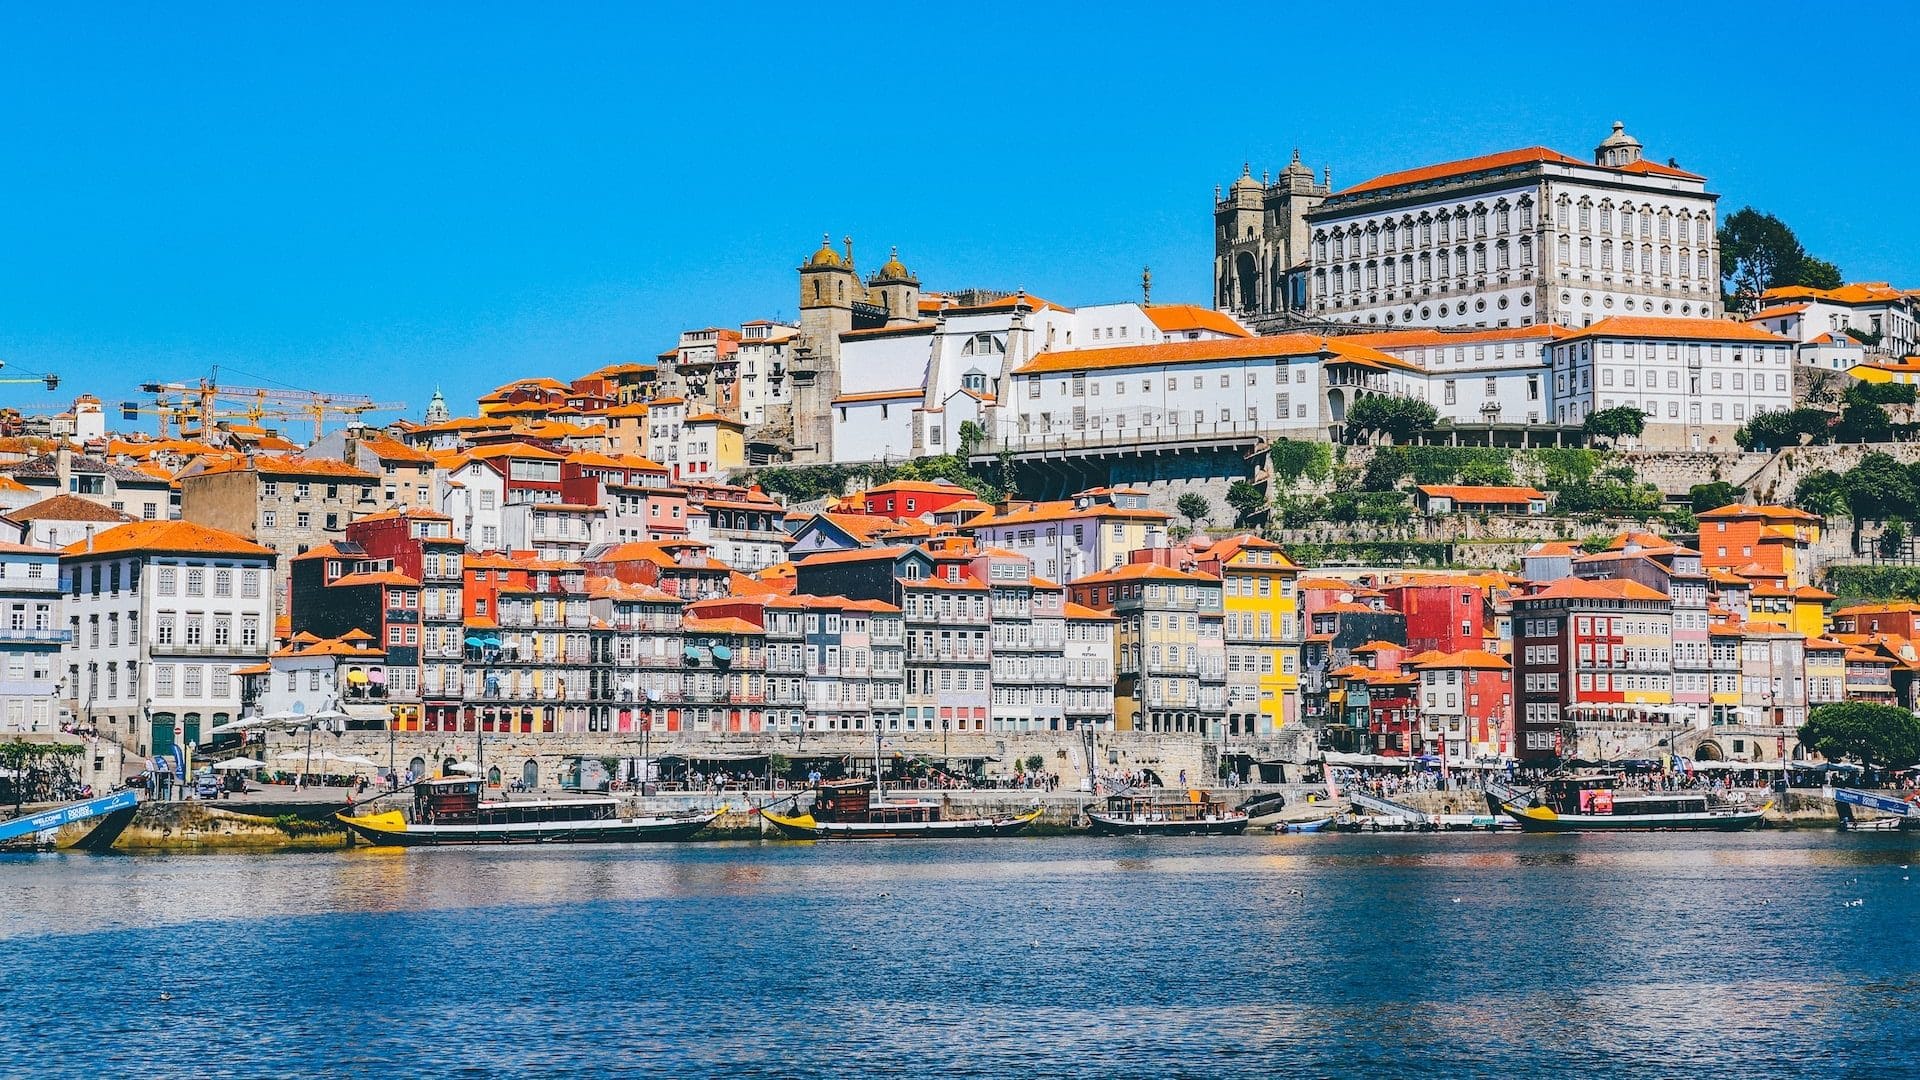 La unión de las zonas más céntricas de la ciudad, União de Freguesias do Centro acoge muchas de las atracciones, museos y hoteles de la ciudad portuguesa